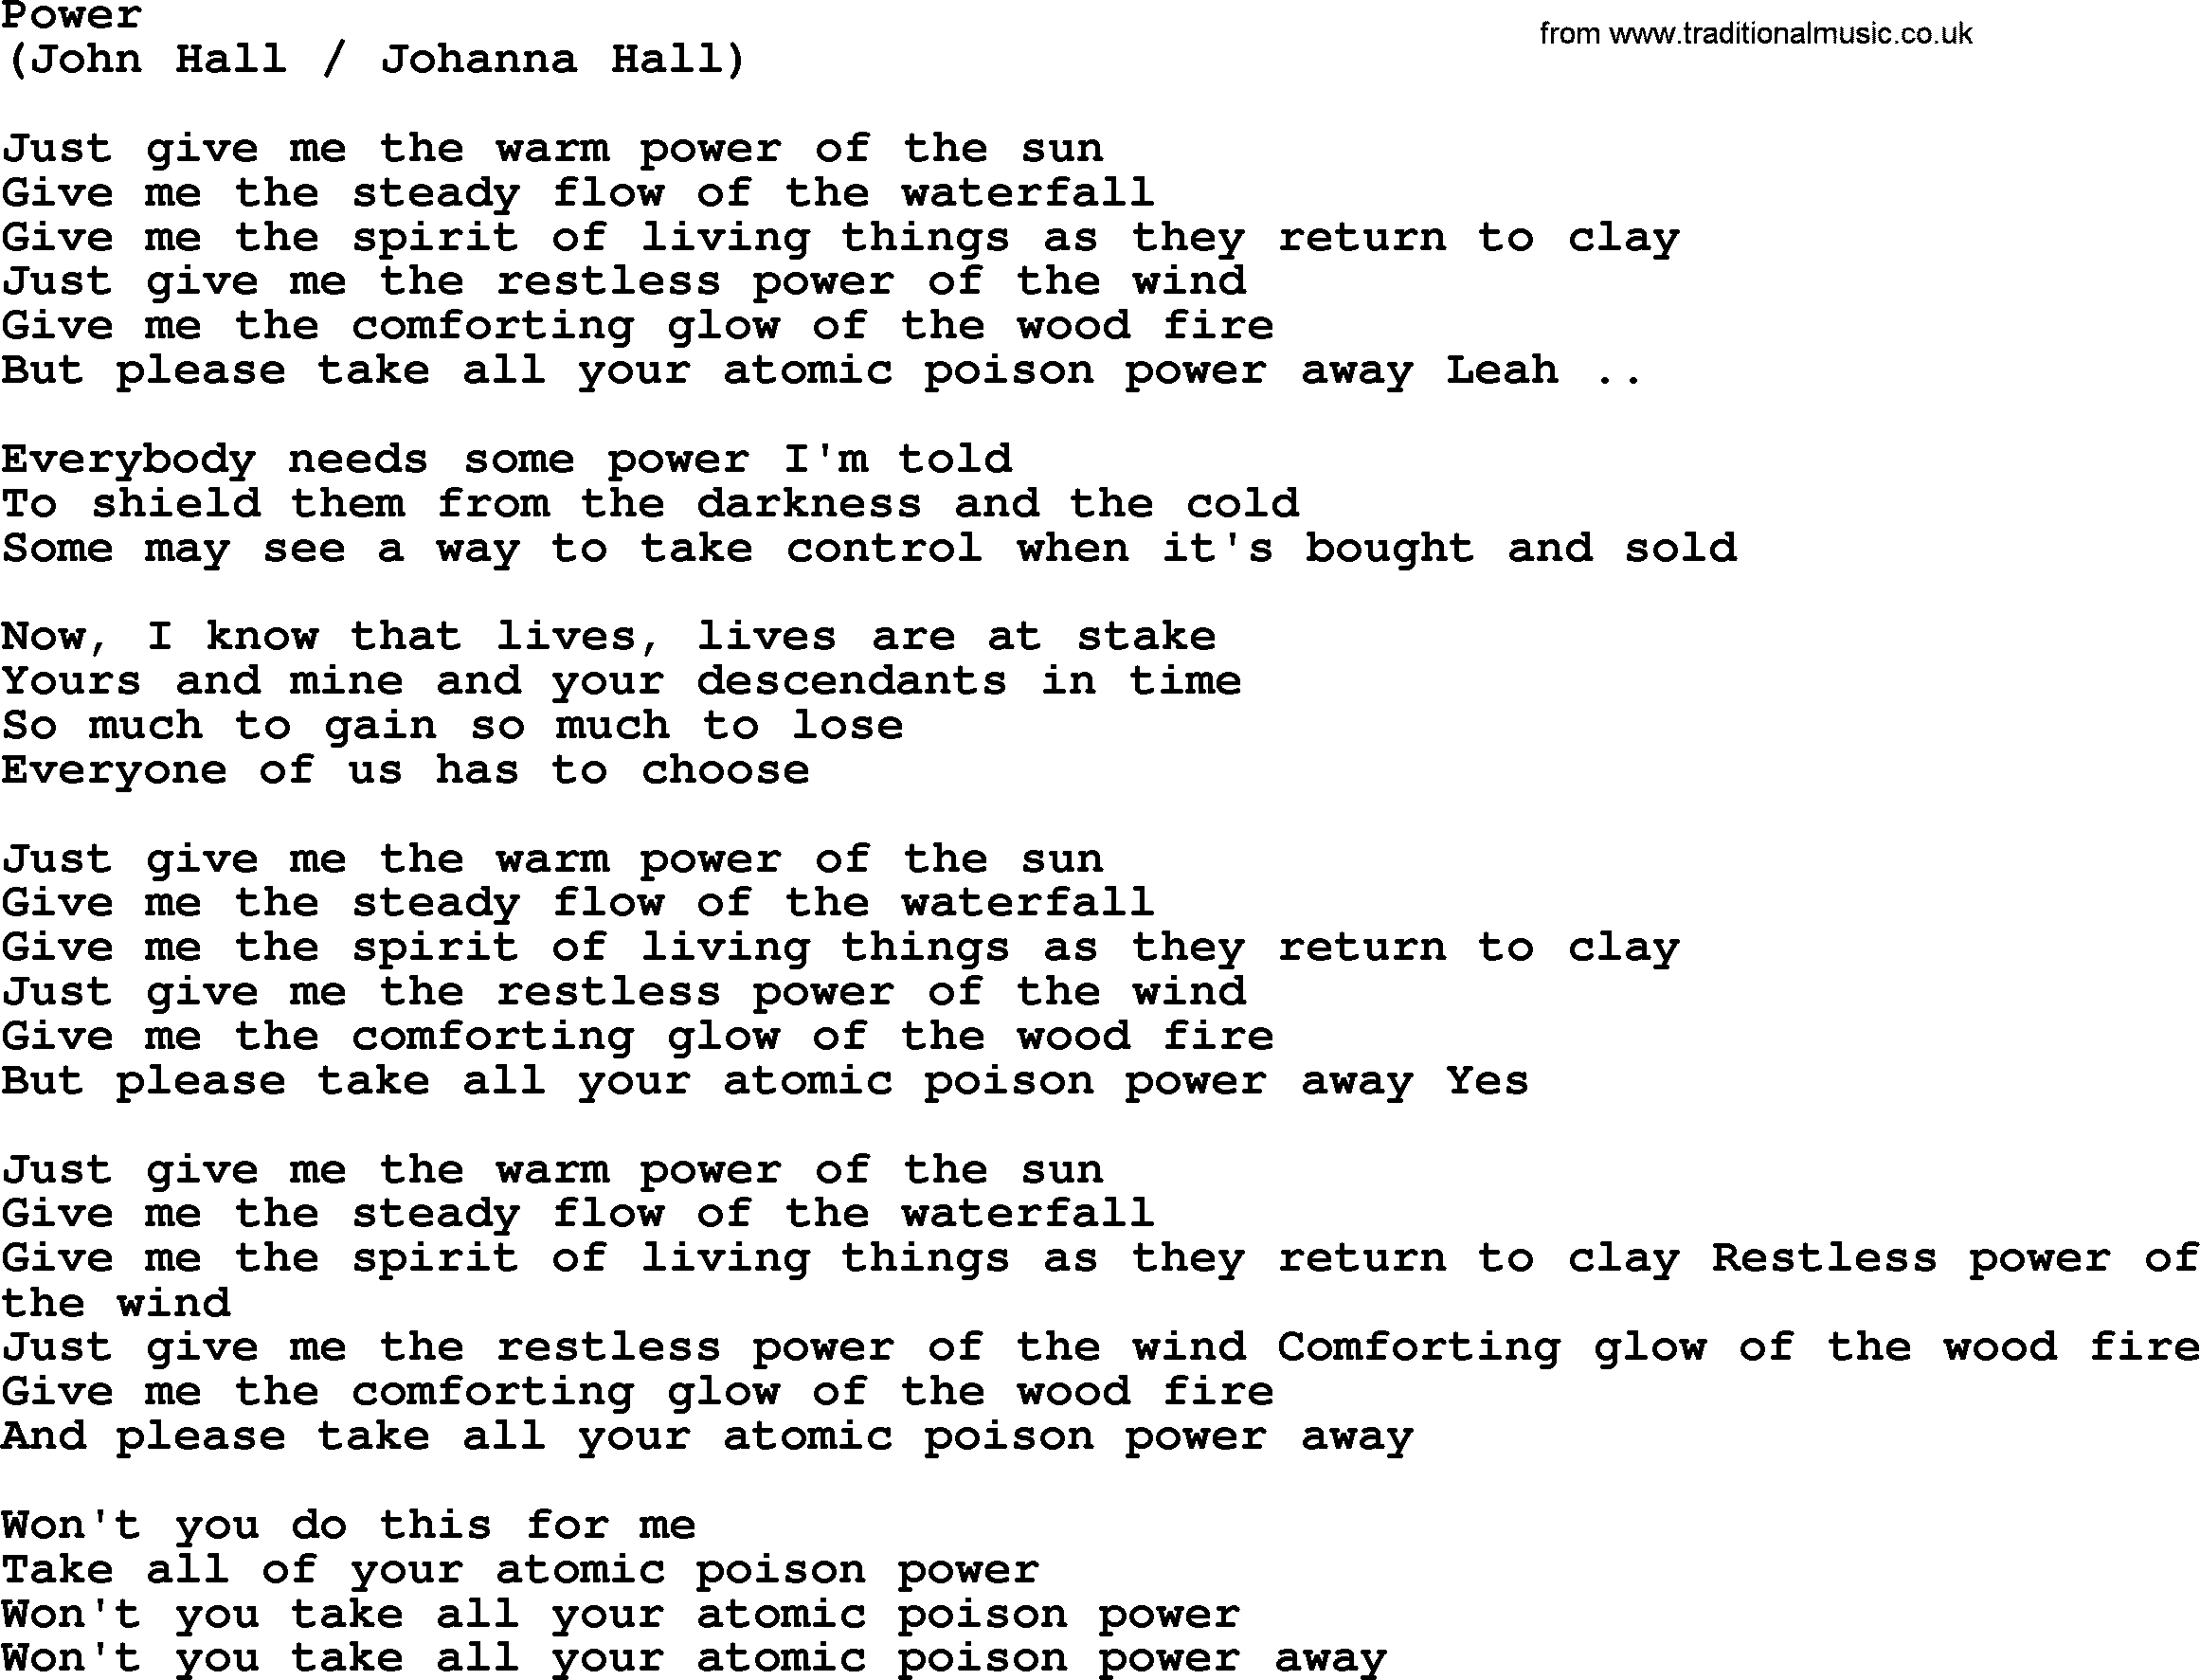 The Byrds song Power, lyrics